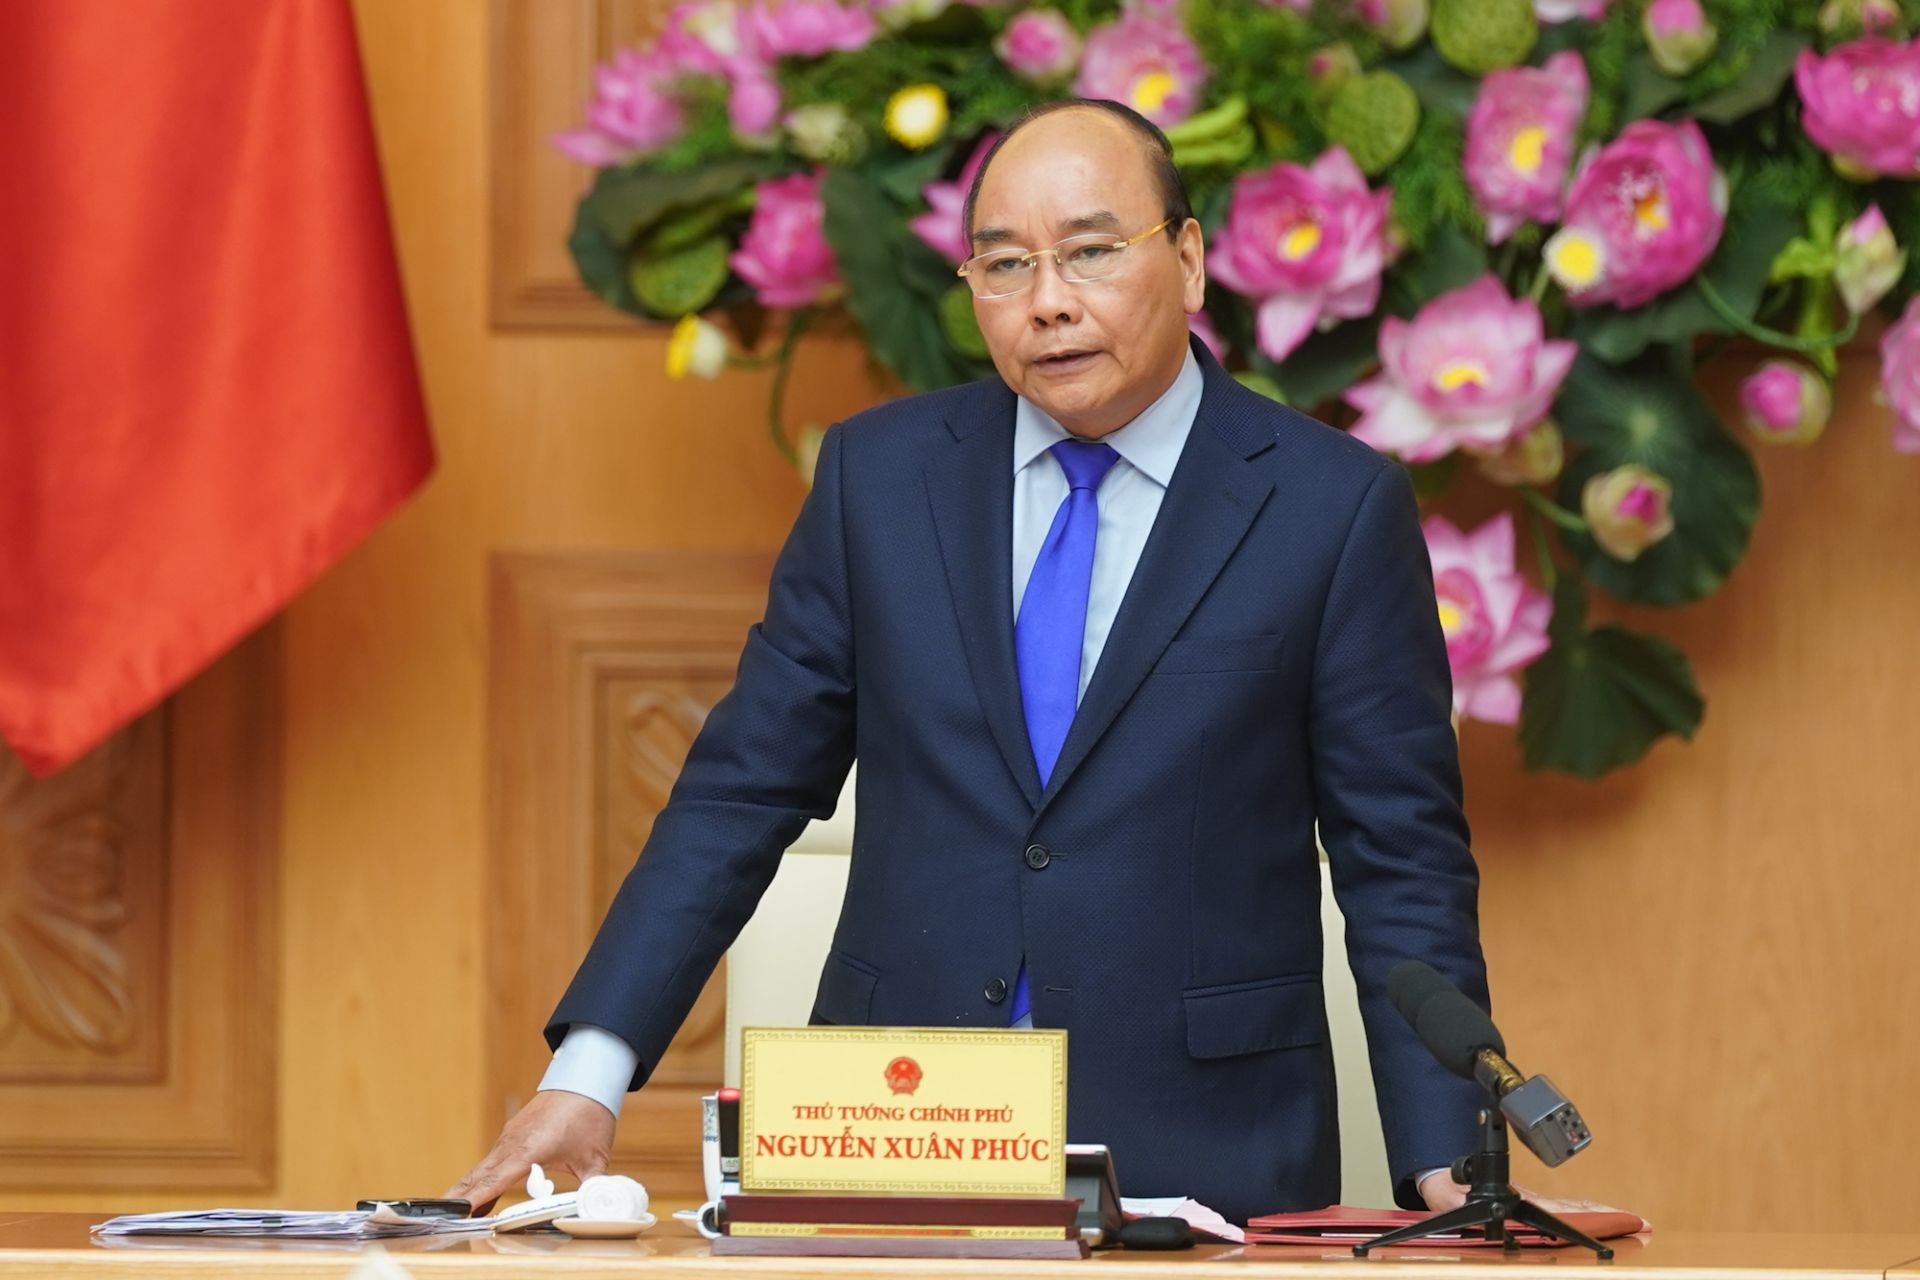 Thủ tướng Nguyễn Xuân Phúc. Ảnh: Báo Quốc tế.